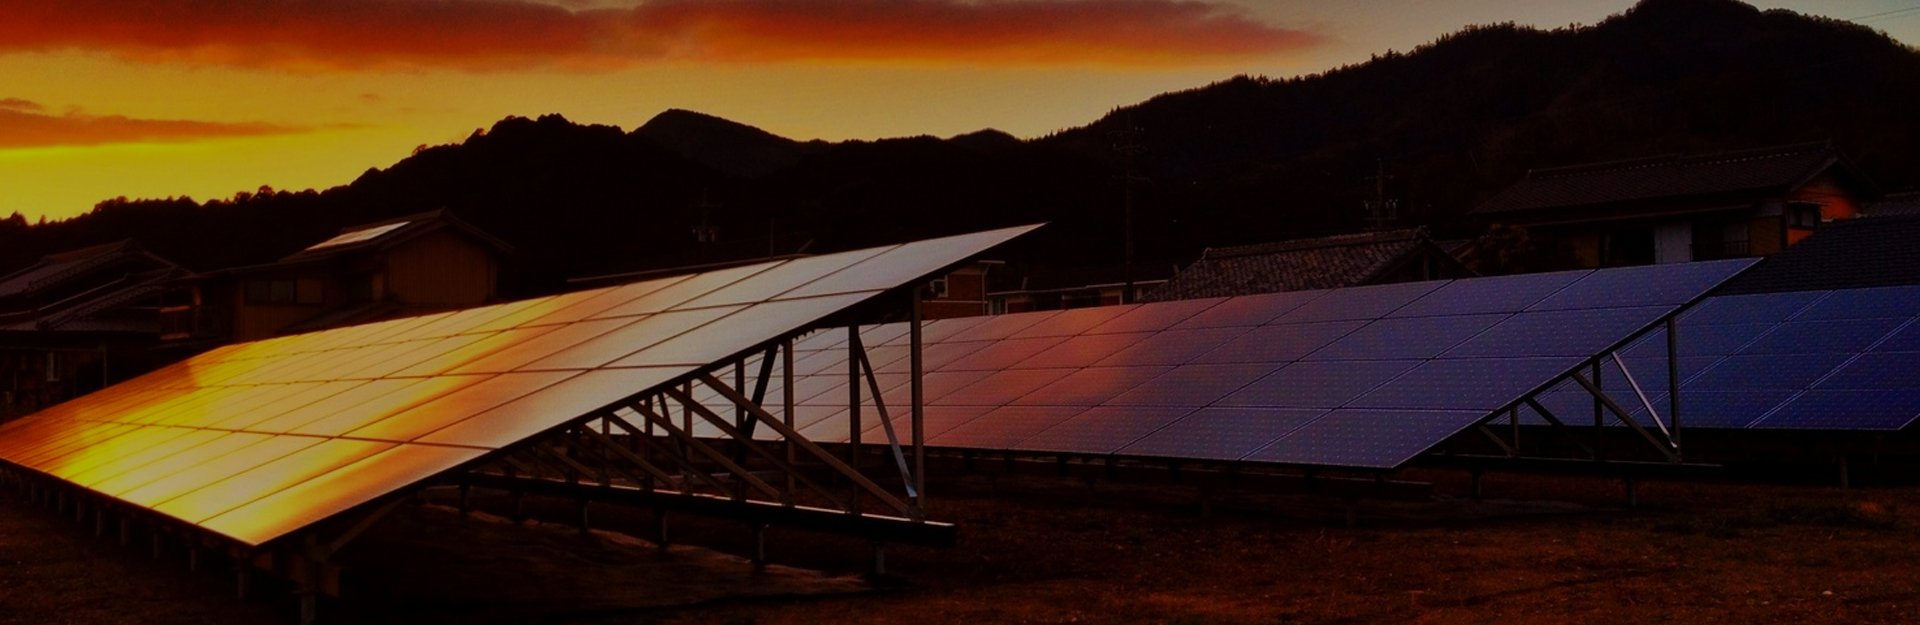 Residential Solar Systems Brisbane